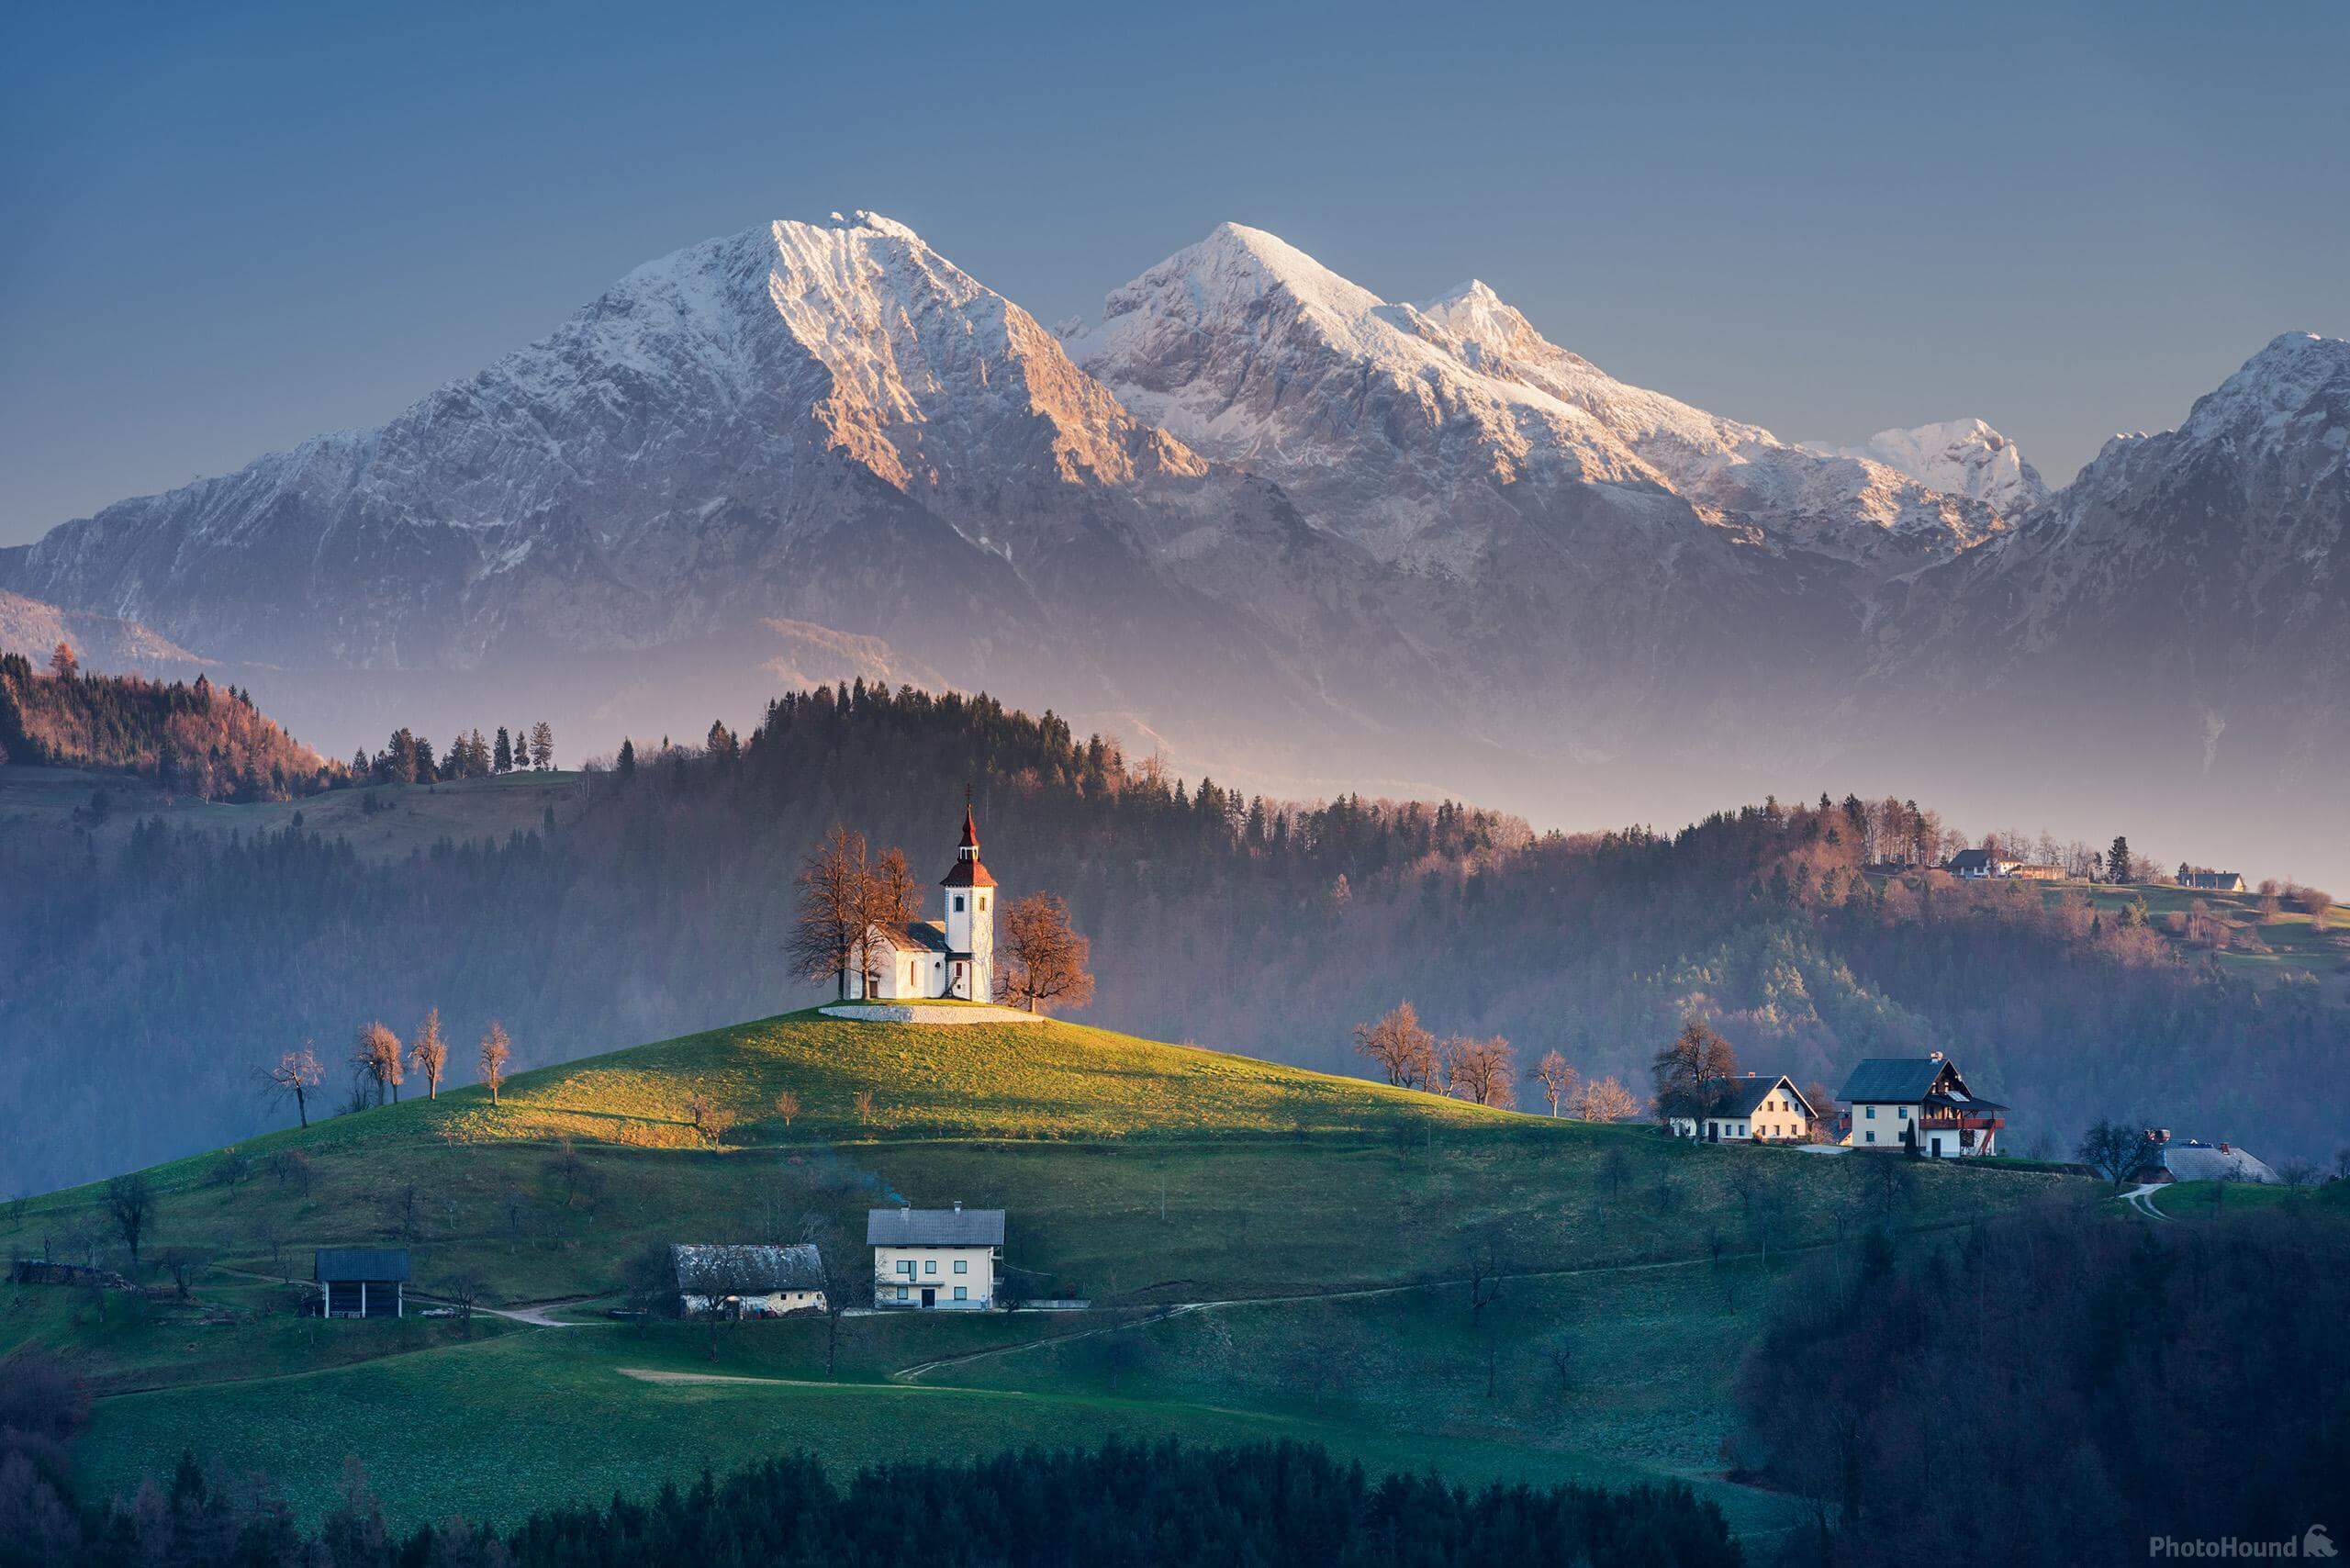 Slovenia photo locations